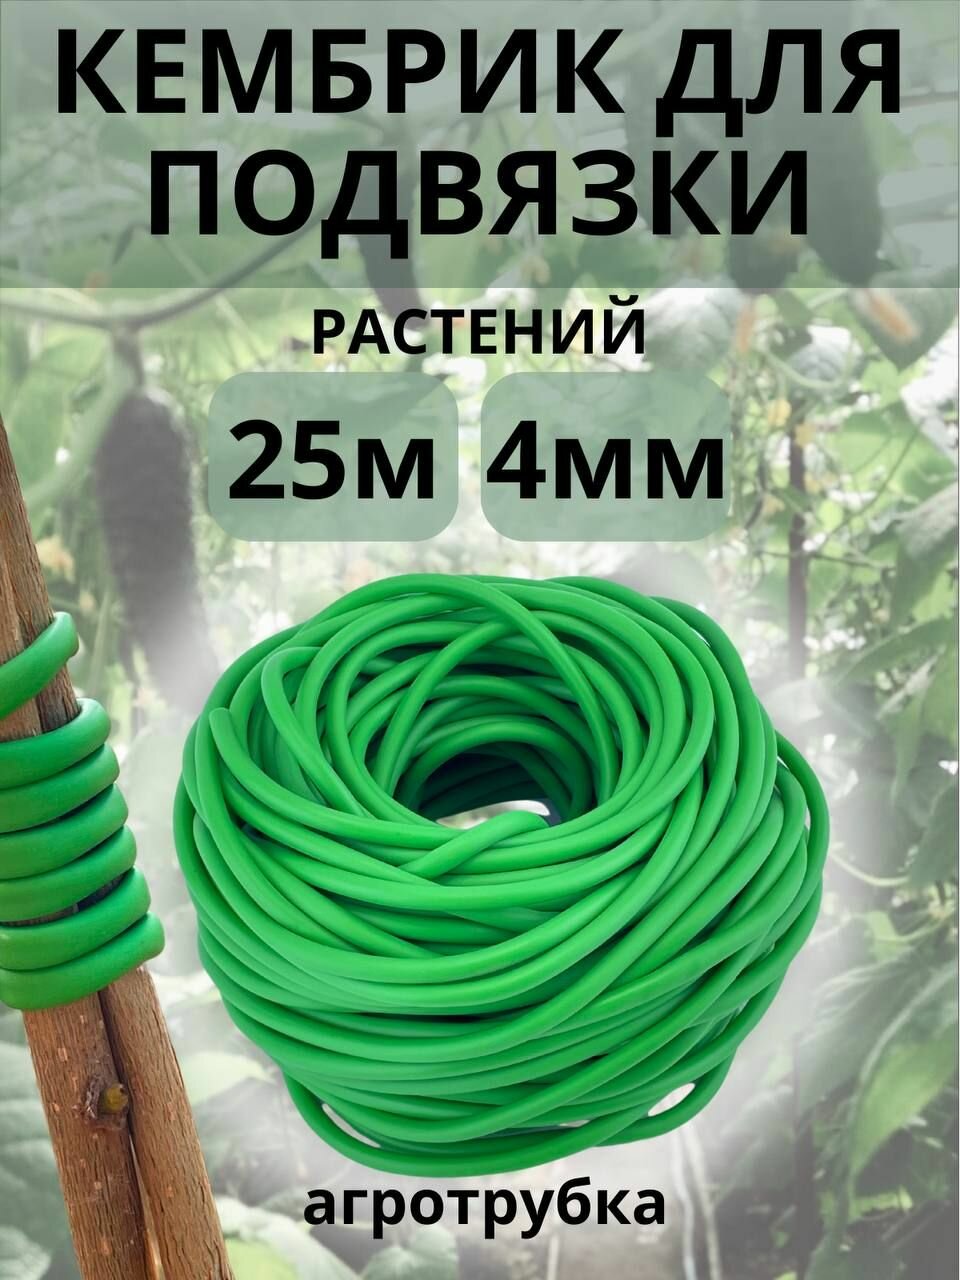 Подвязка для растений Кембрик 4 мм/ 25 метров